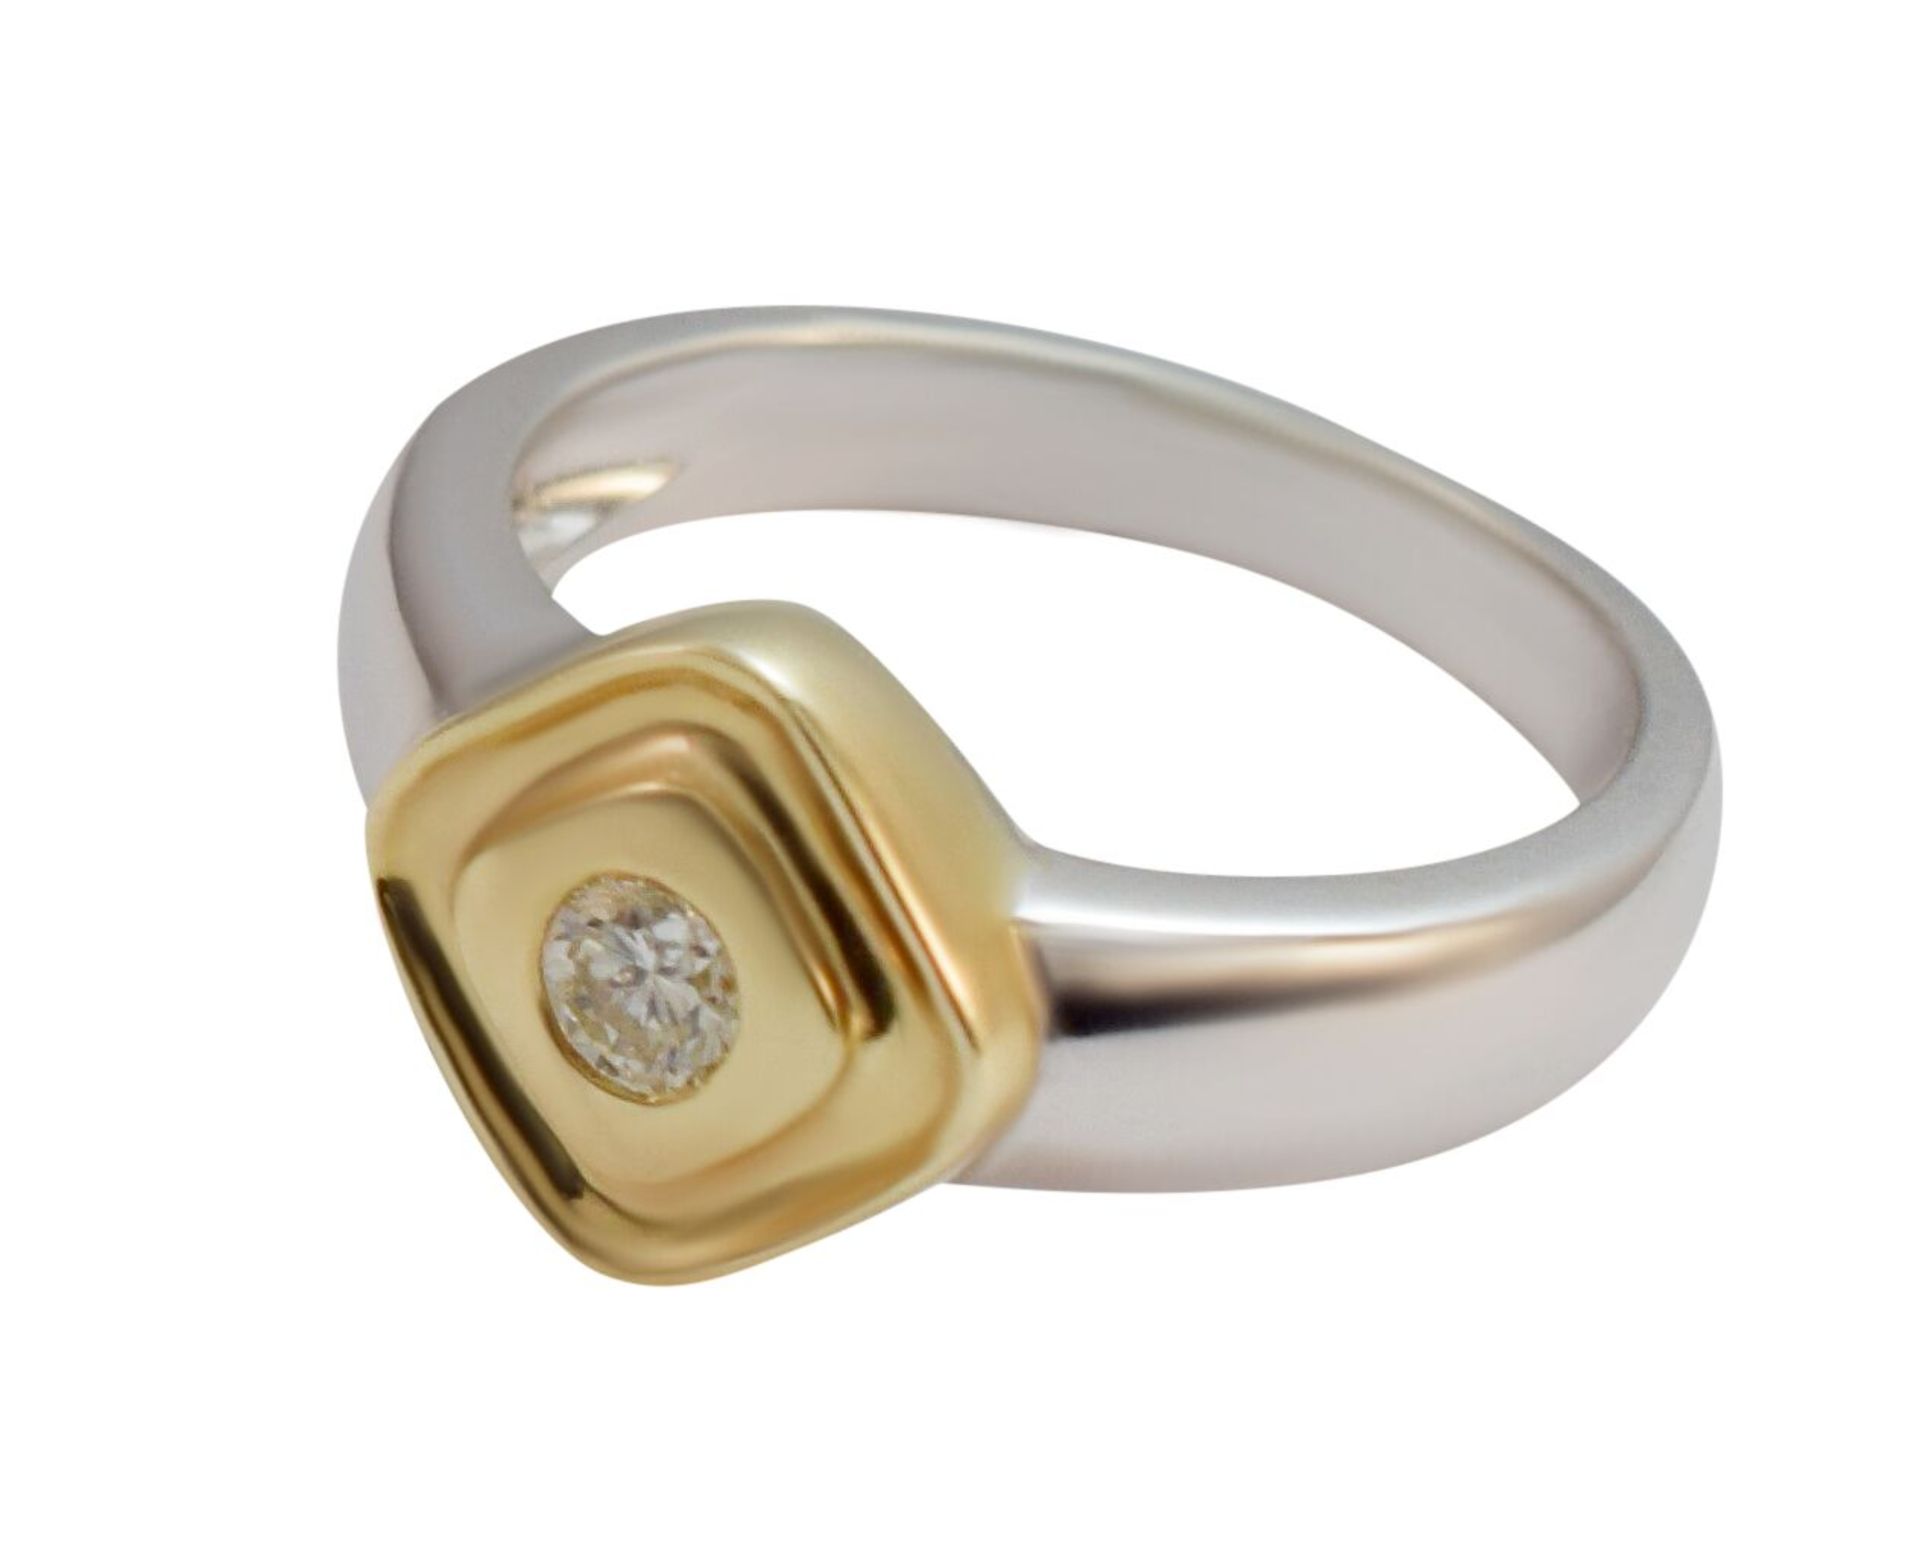 Two Tone Diamond 9ct Yellow & White Gold Ring RRP £1585 Size O